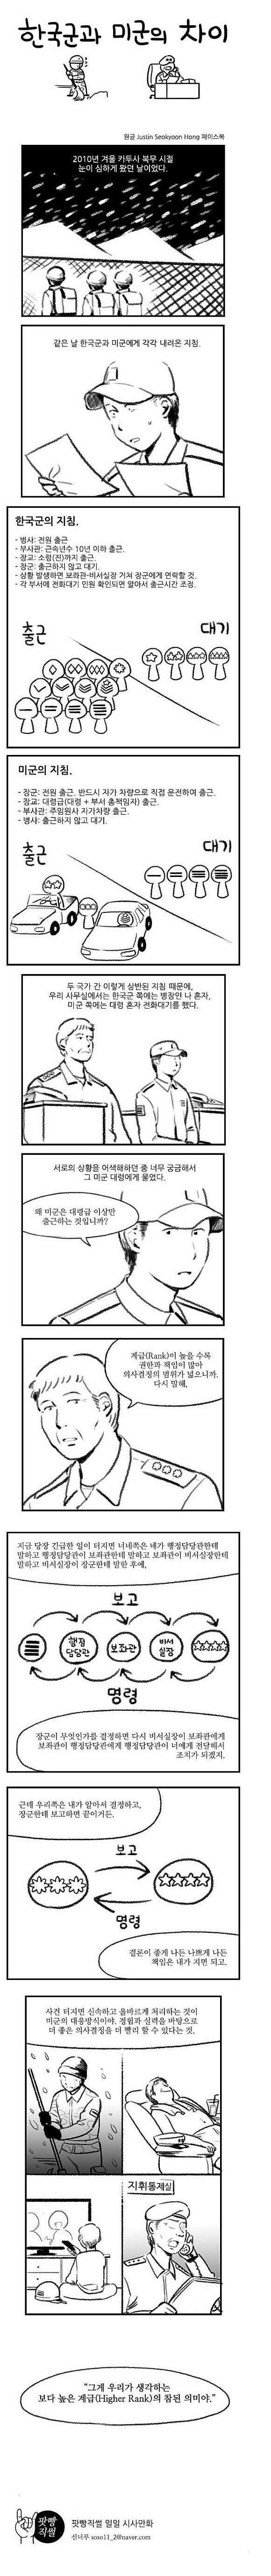 한국군과 미군의 차이.jpg